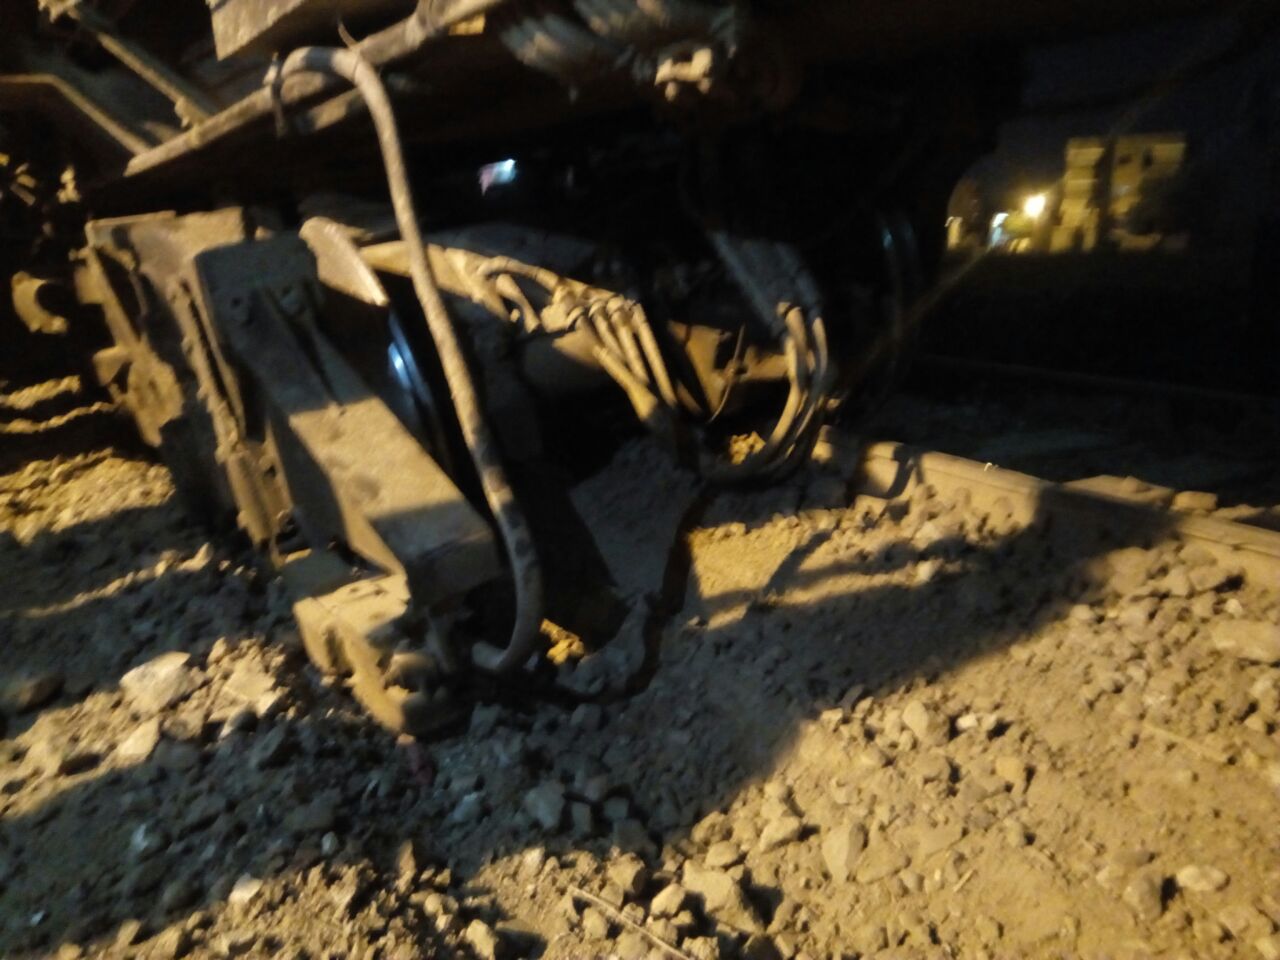 خروج عجلات جرار قطار قلين بكفر الشيخ عن القضبان بسبب هبوط أرضي